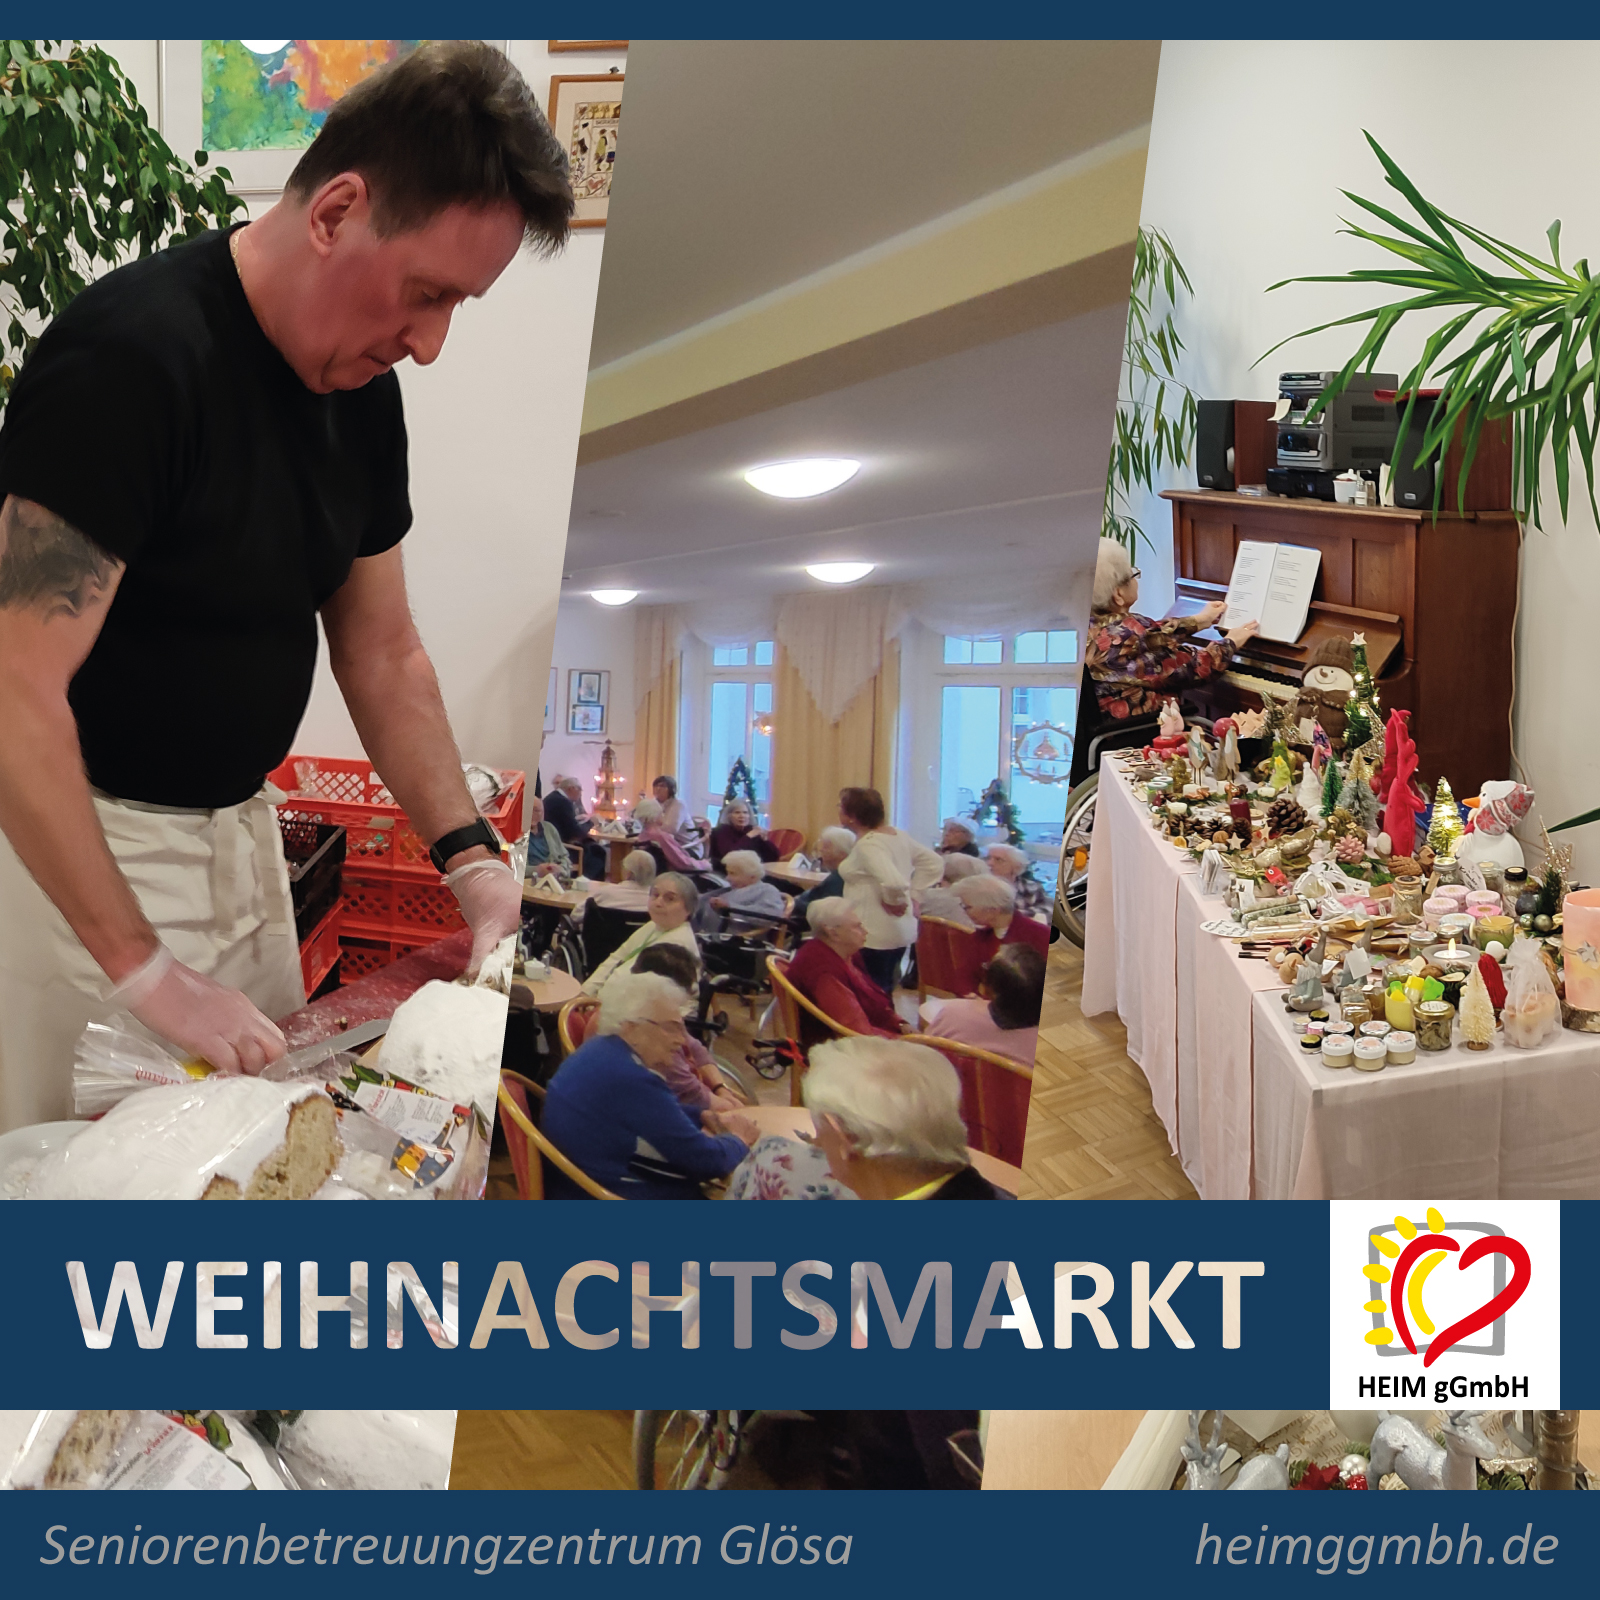 Traditioneller Weihnachtsmarkt in unserem Seniorenbetreuungszentrum Chemnitz-Glösa der HEIM gemeinnützige GmbH